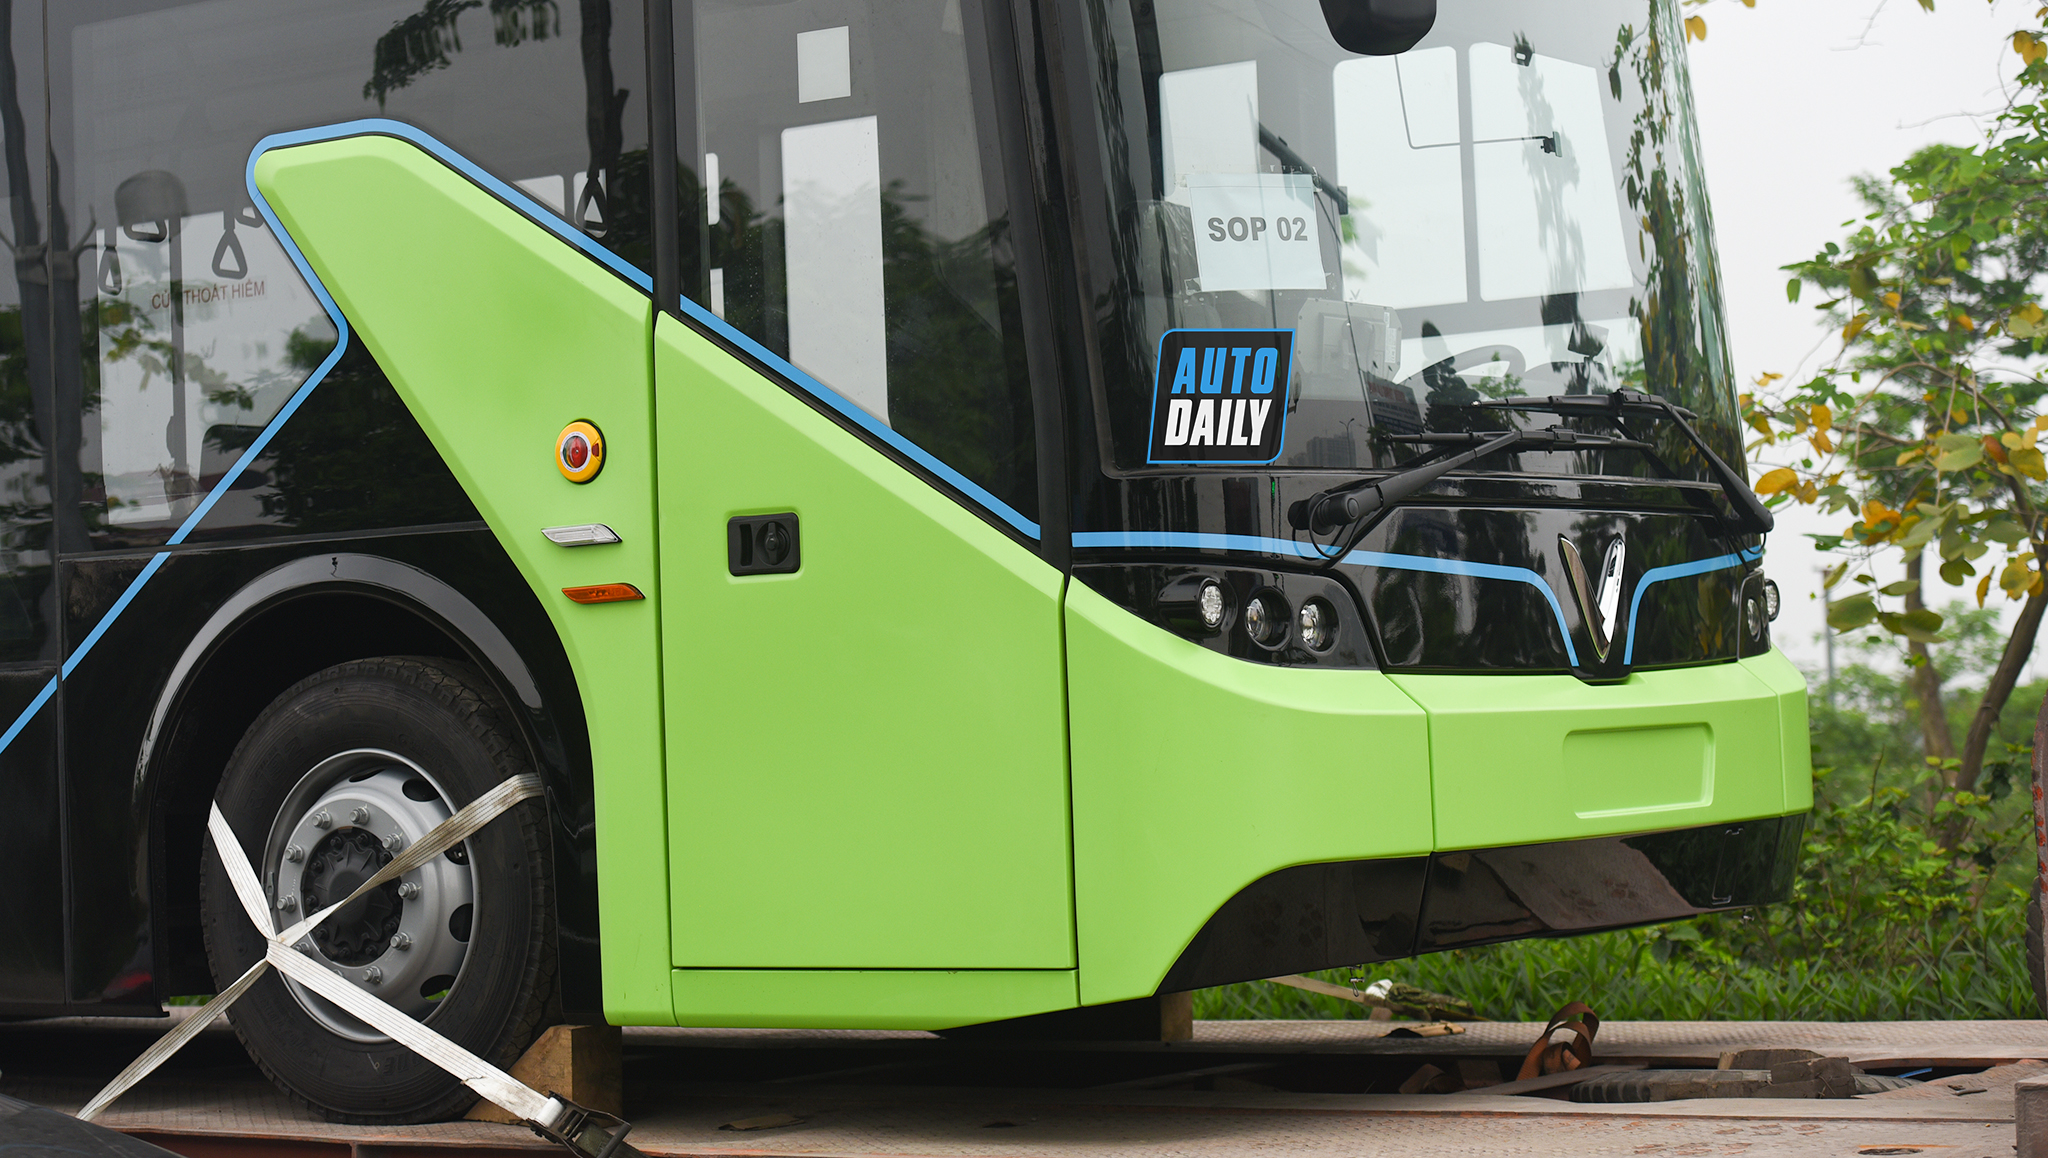 Chùm ảnh loạt xe Bus điện VinFast có mặt tại Hà Nội, sẵn sàng chạy thí điểm dsc-3819-copy.jpg